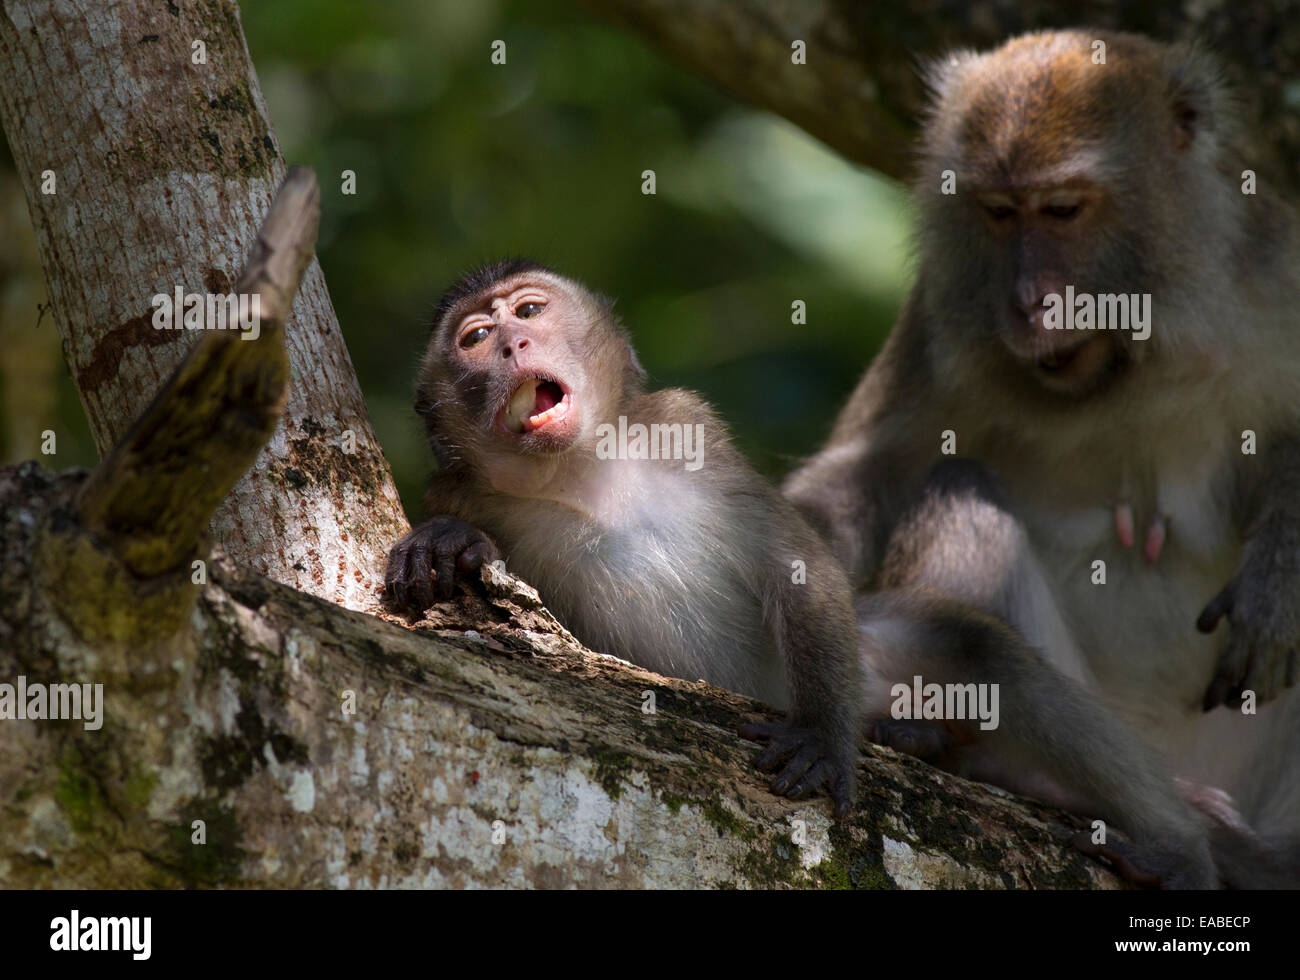 Manger du crabe - Macaca fascicularis macaque - l'alimentation et le toilettage, le parc national de Bako, Sarawak, Malaisie Banque D'Images